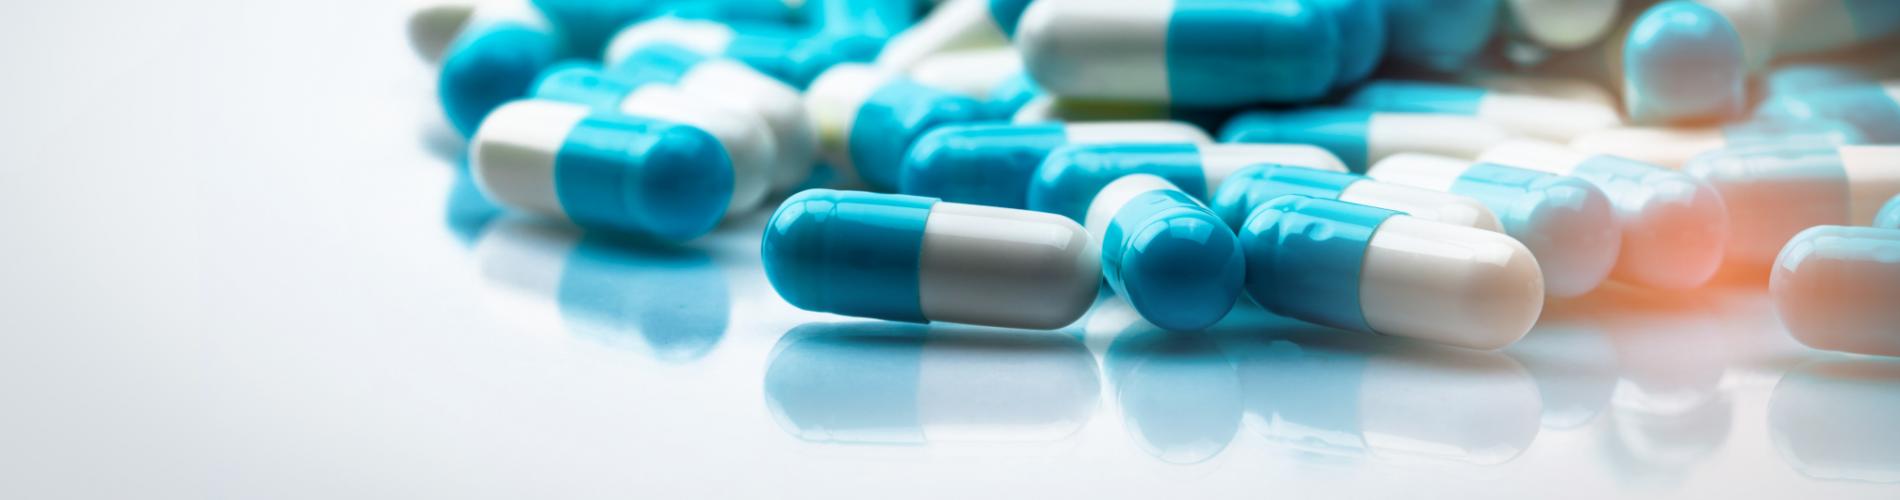 AfCFTA-anchored Pharma Initiative